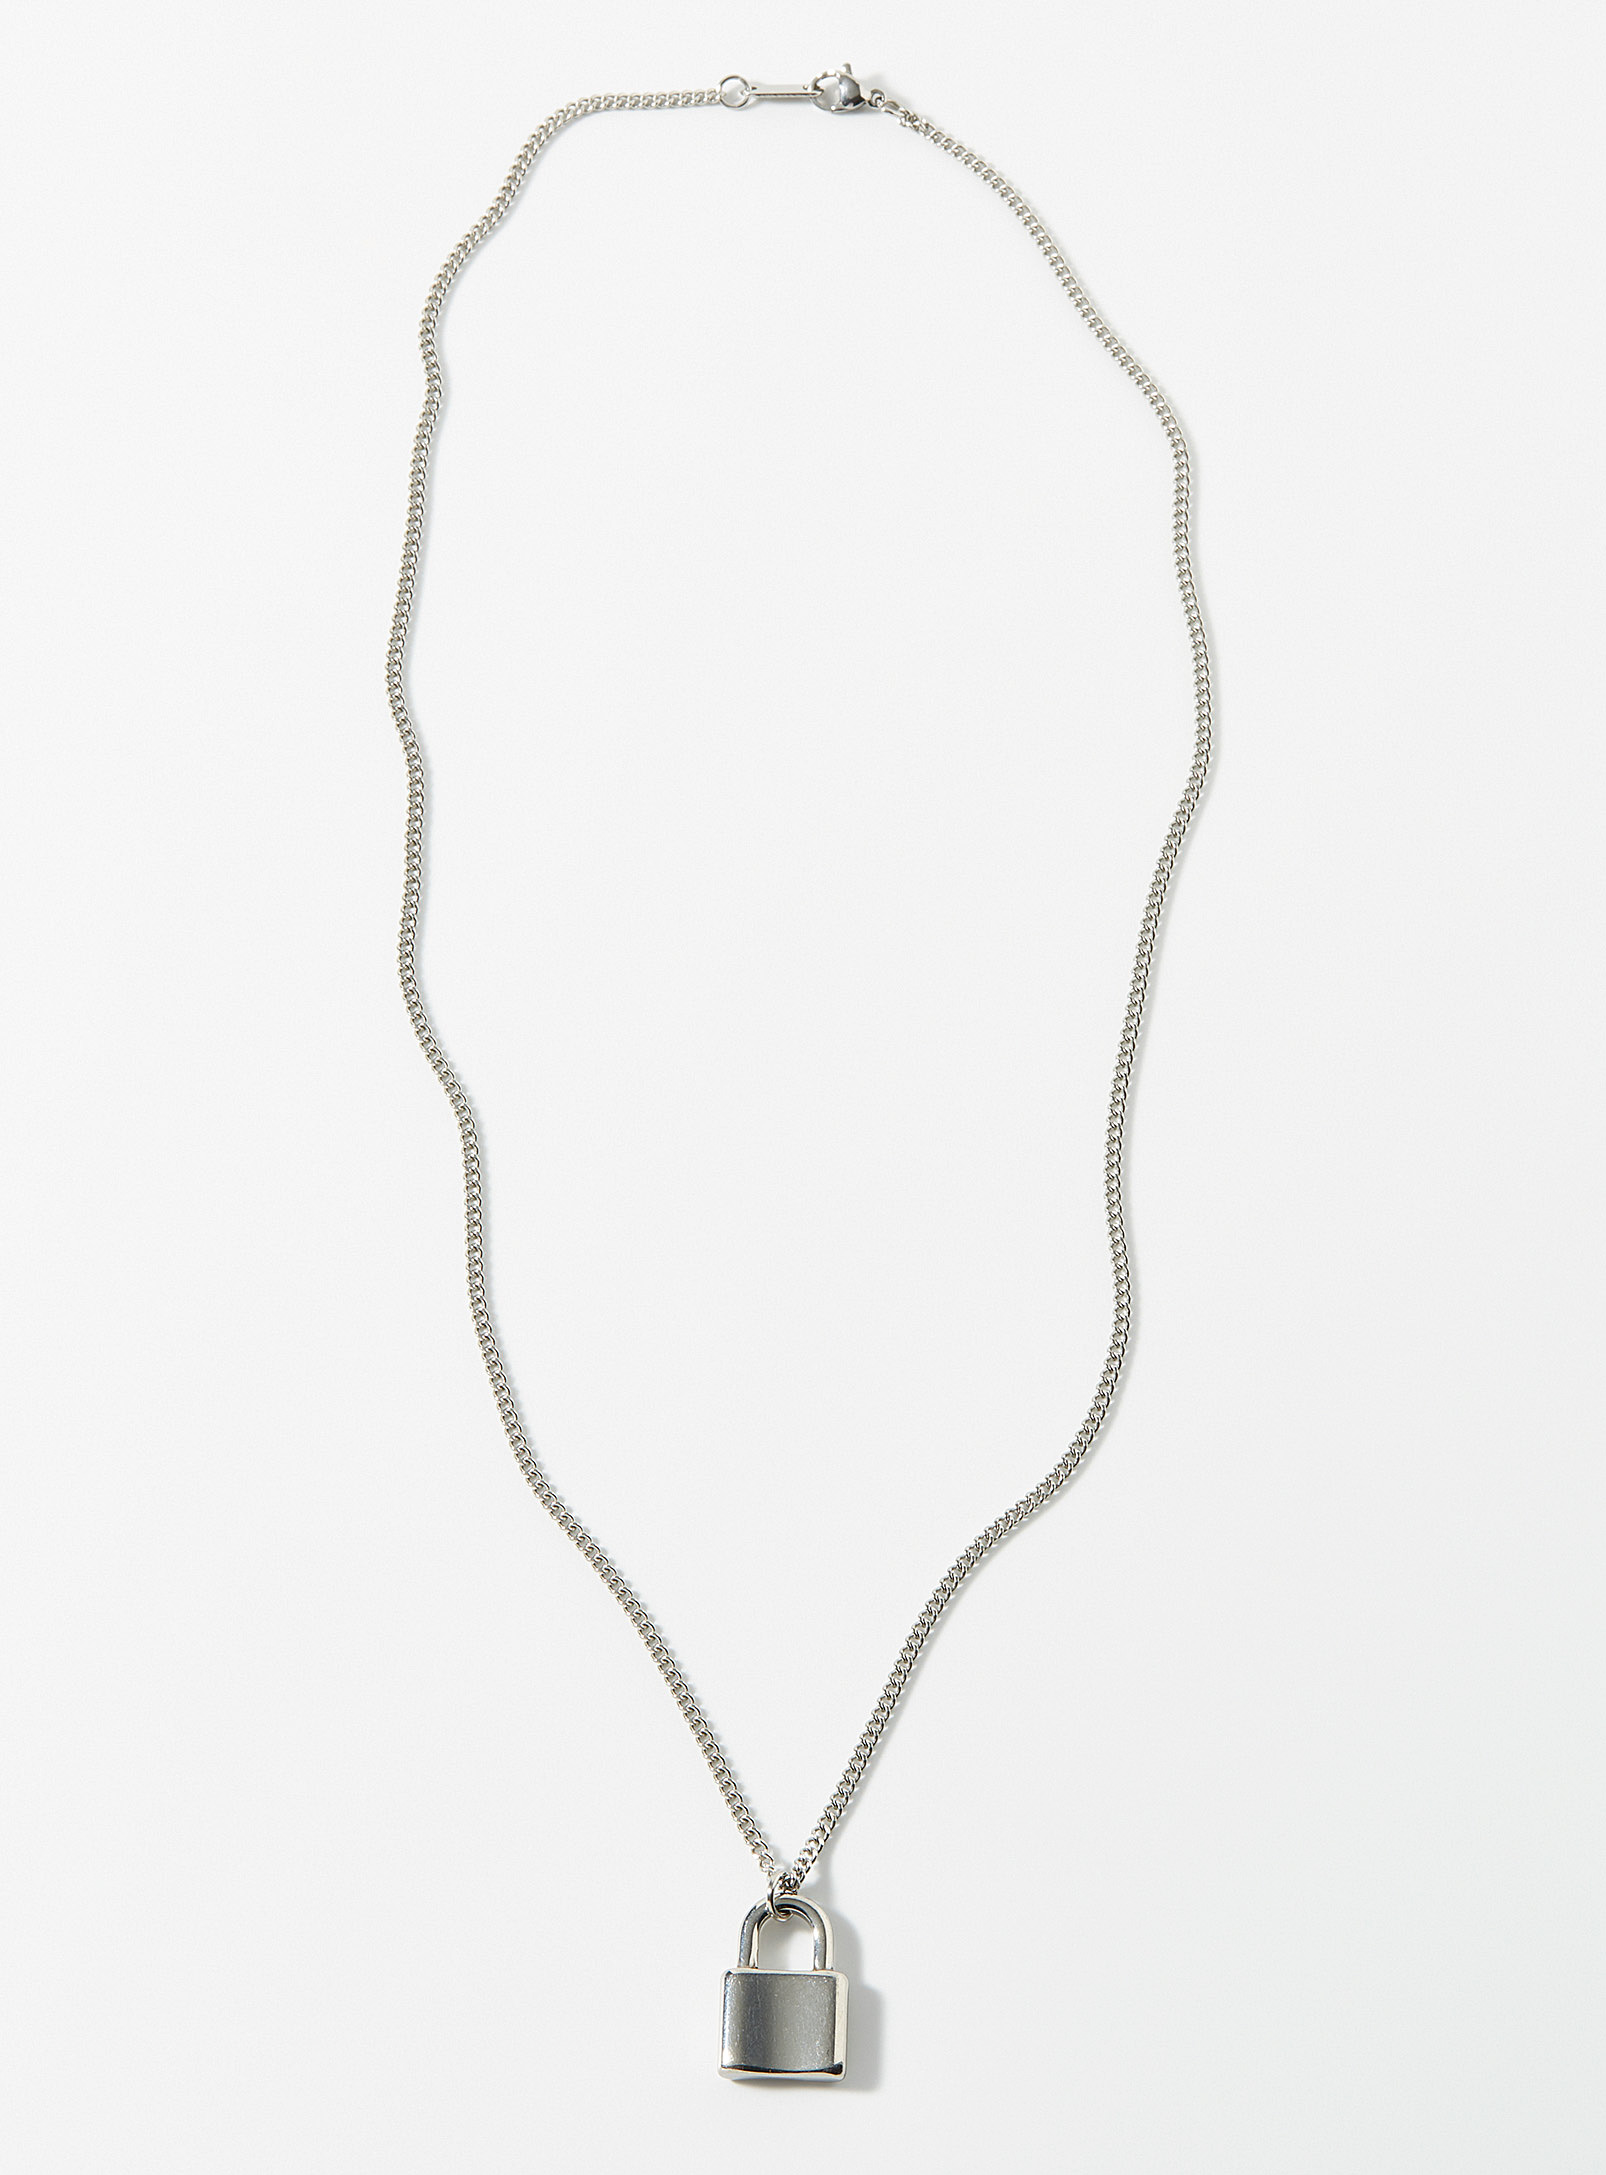 Le 31 - Men's Padlock pendant necklace